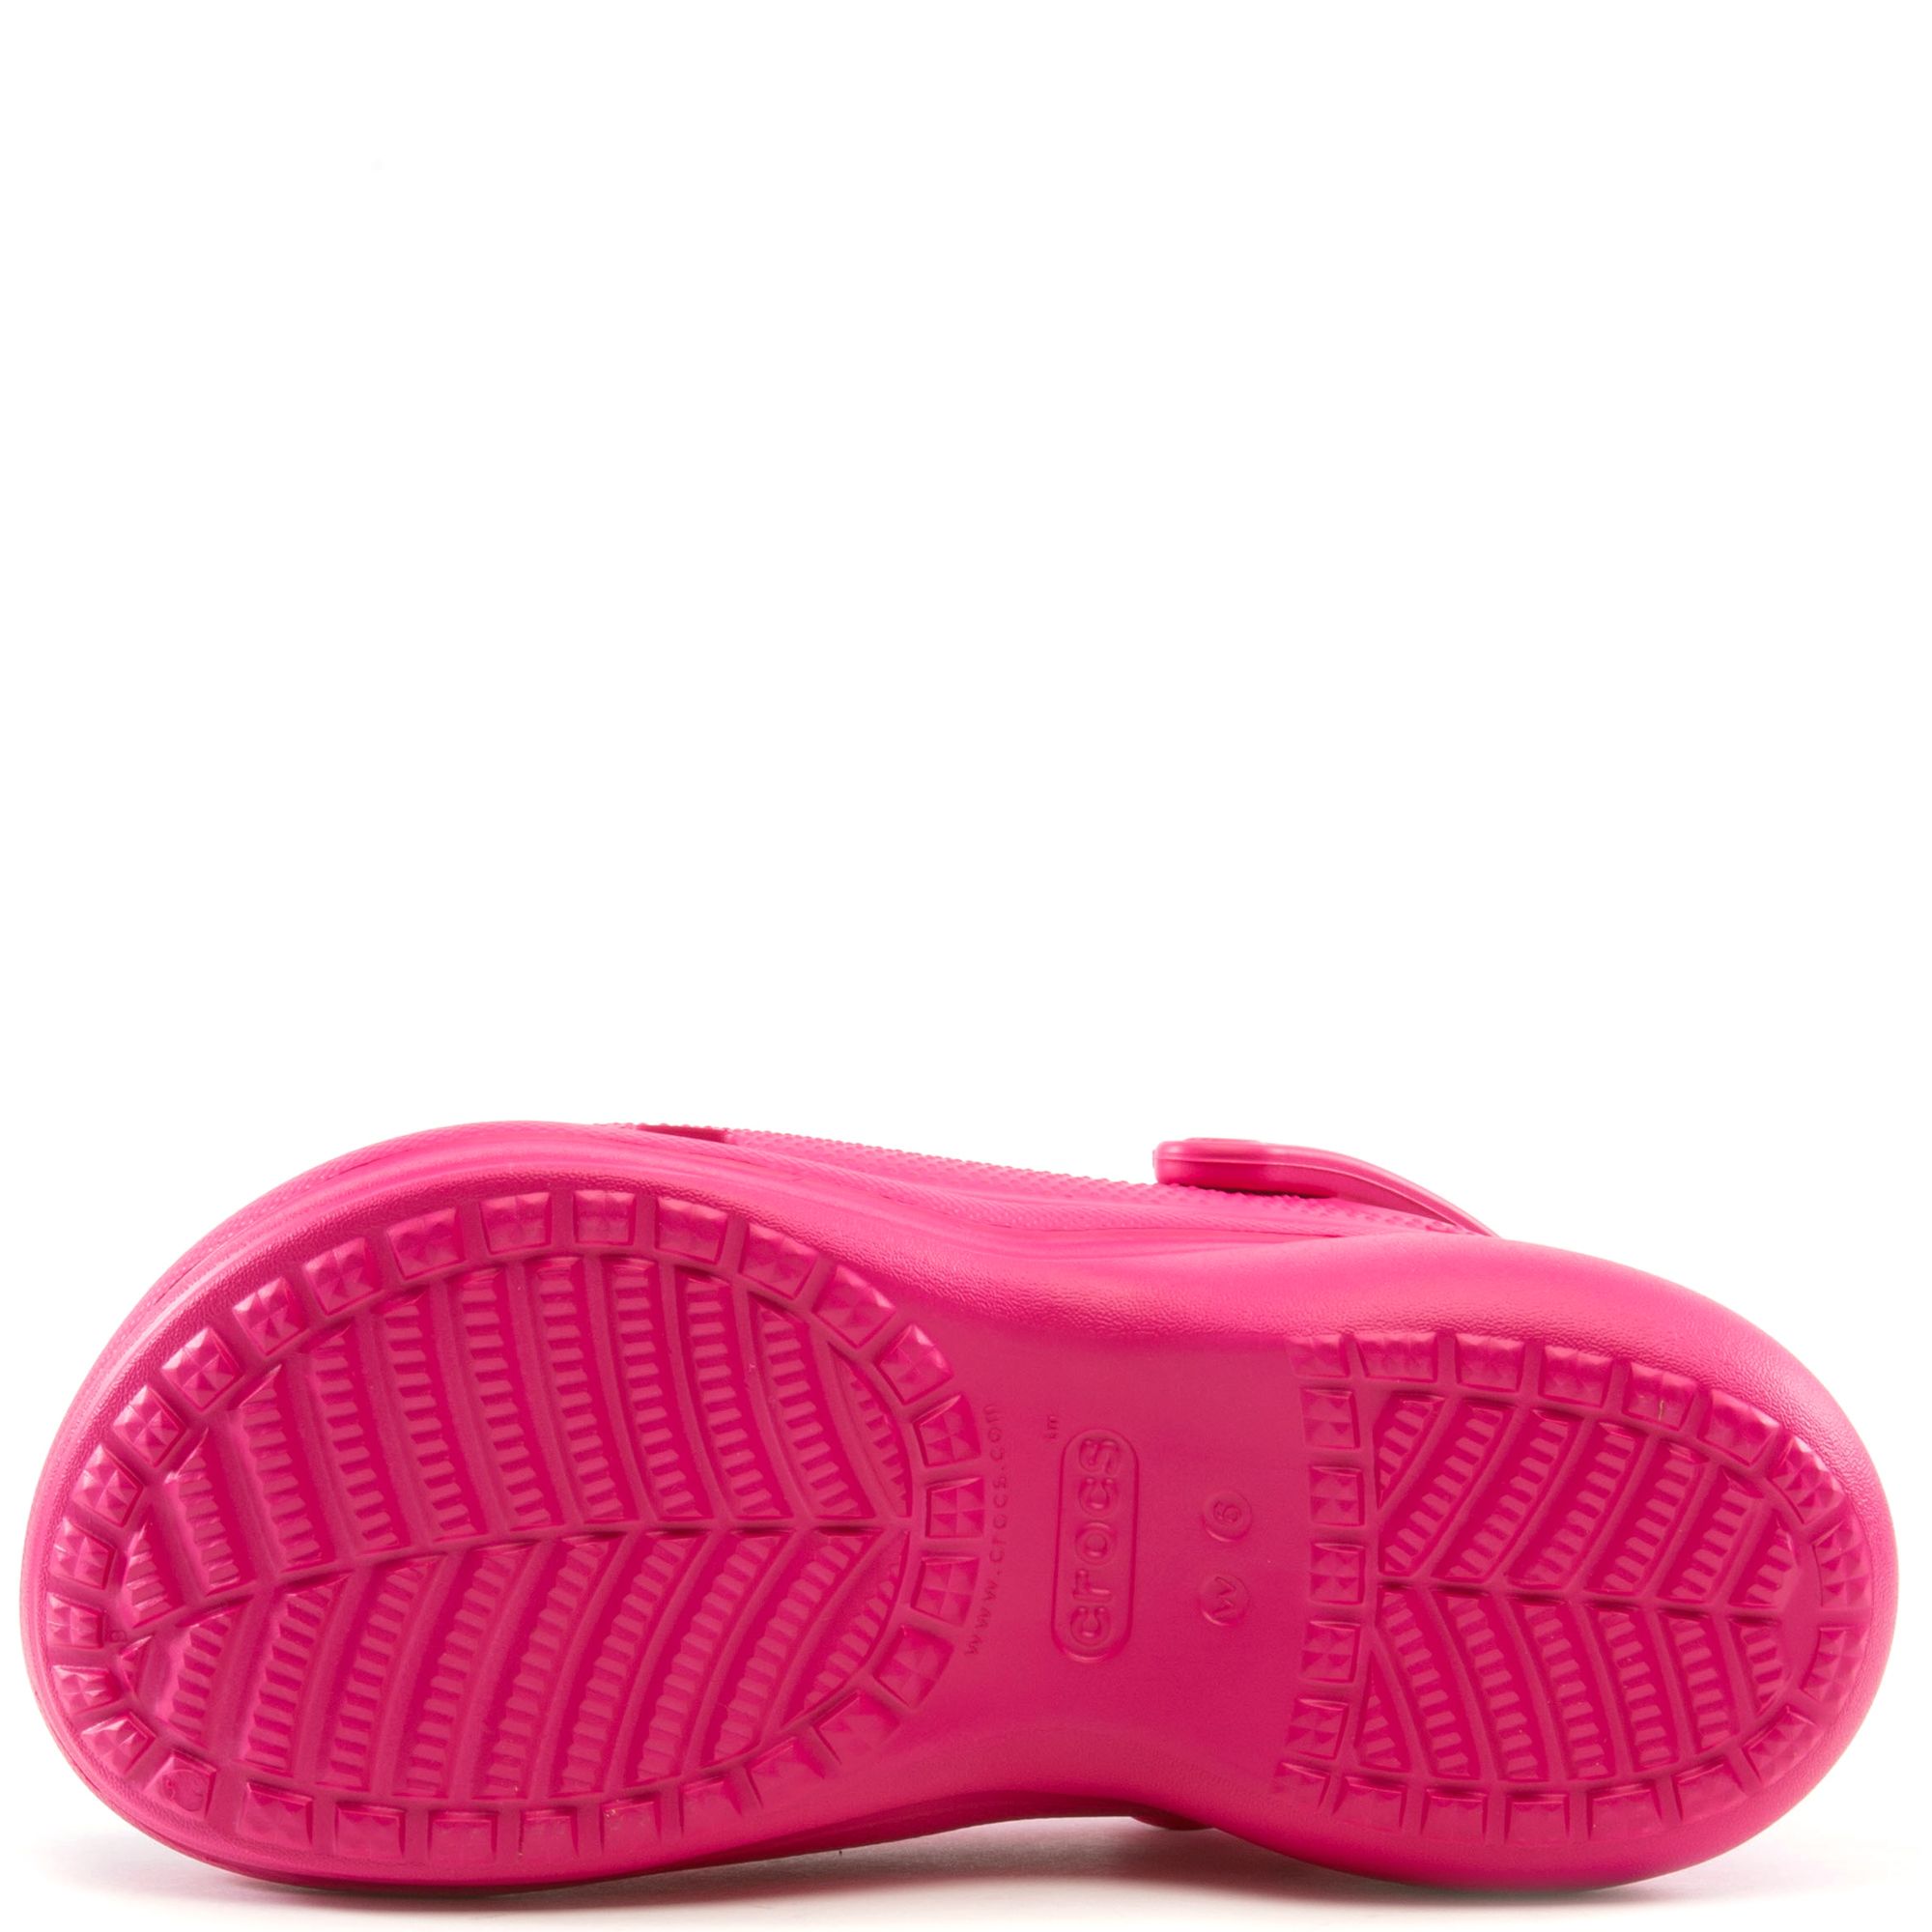 Crocs Classic Bae Clog Candy Pink (Women's) - 206302-6X0 - US